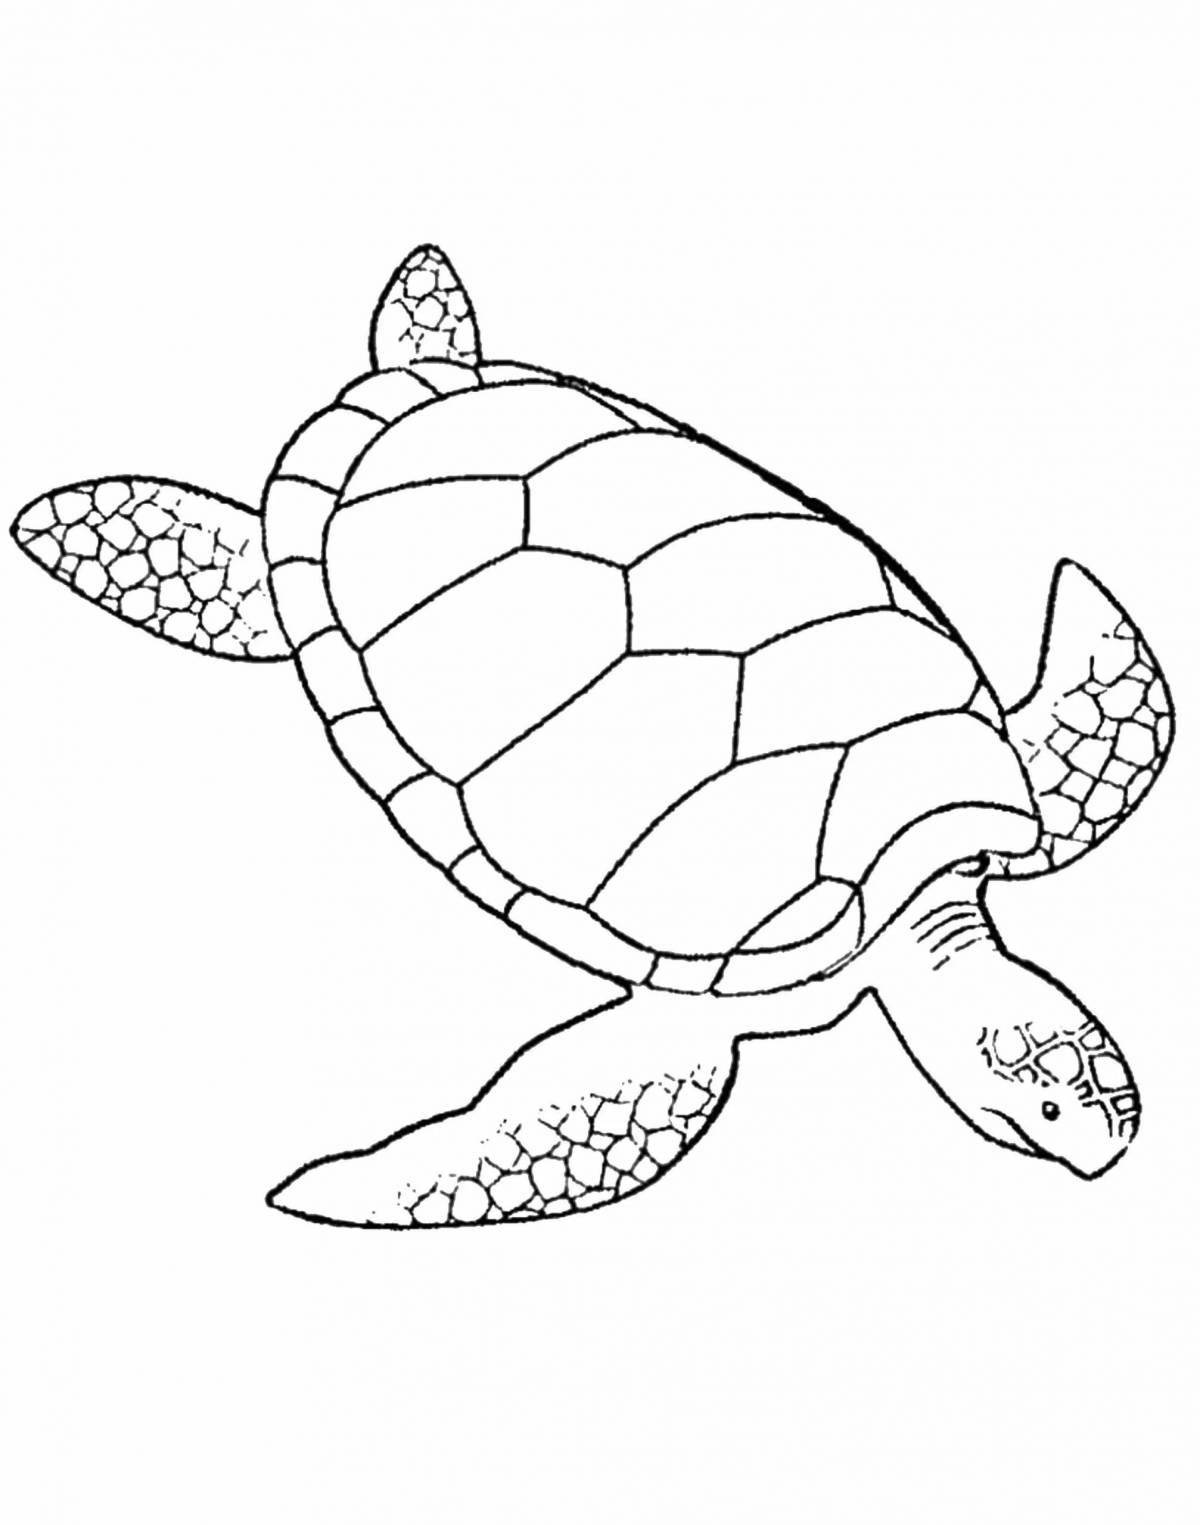 Сказочная морская черепаха раскраска для детей